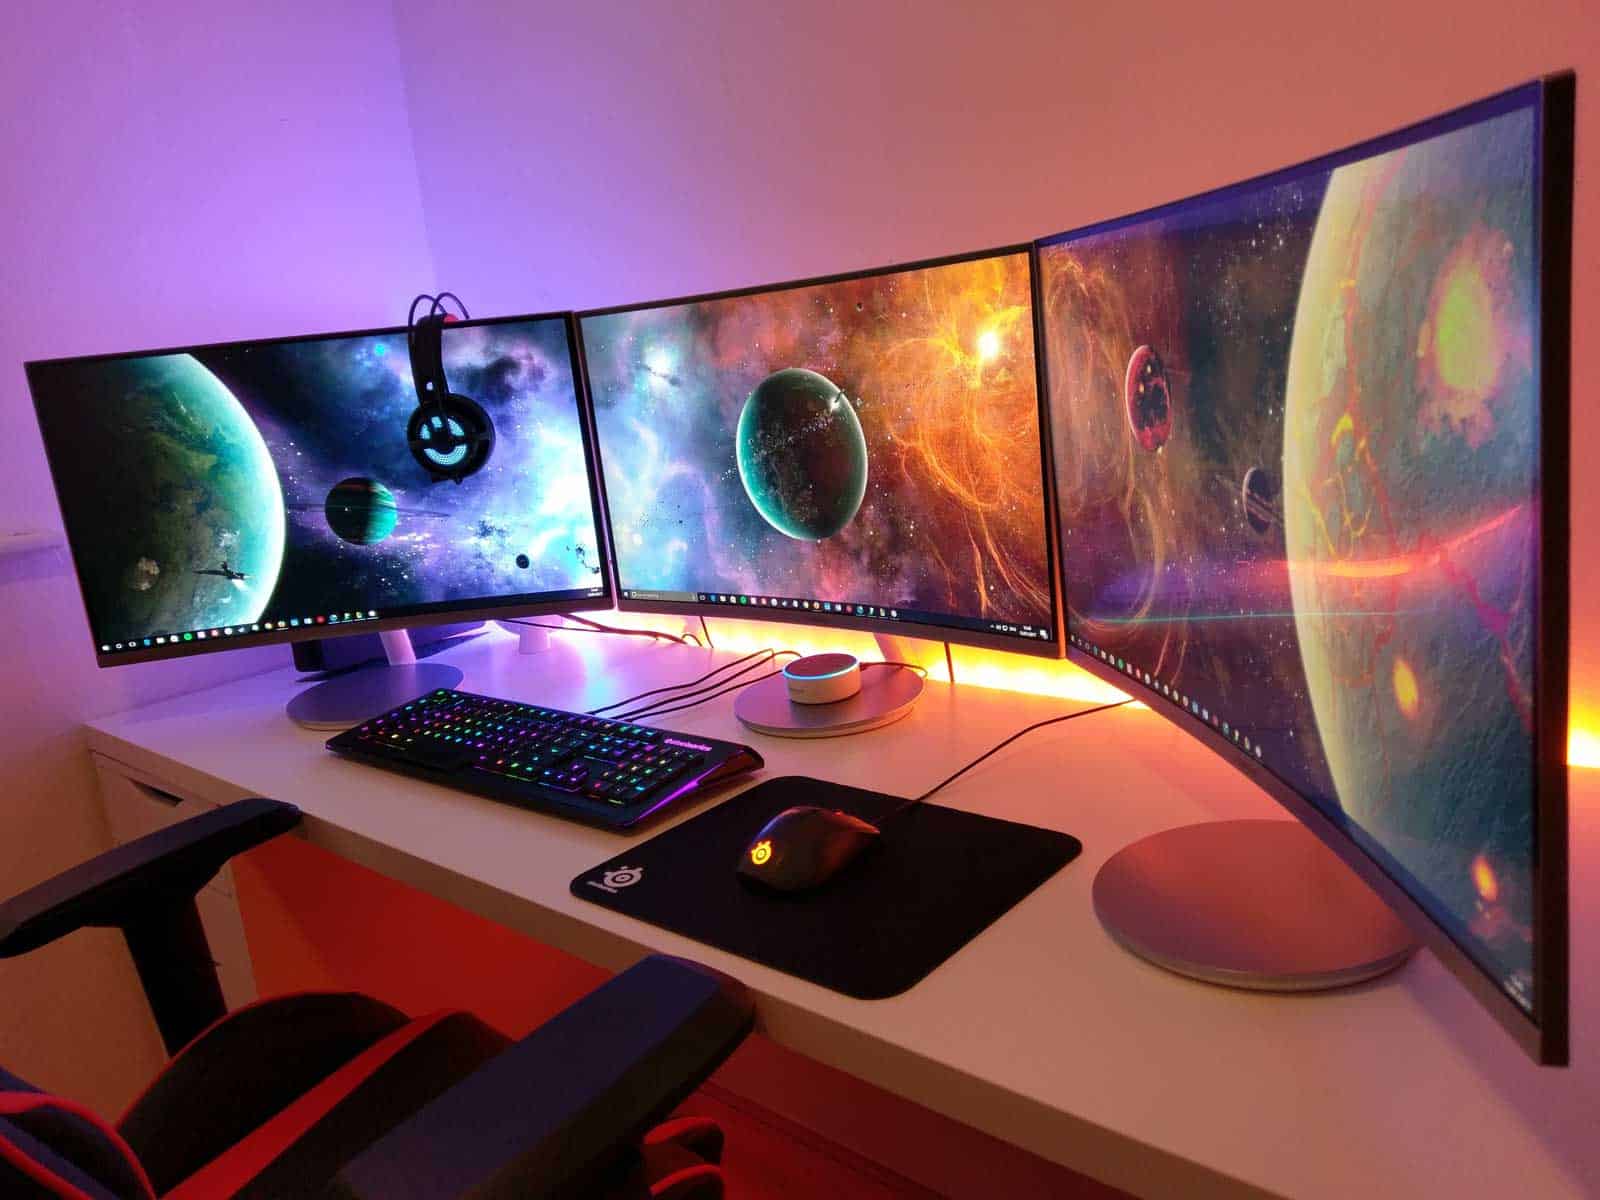 Are gaming desks ergonomic?